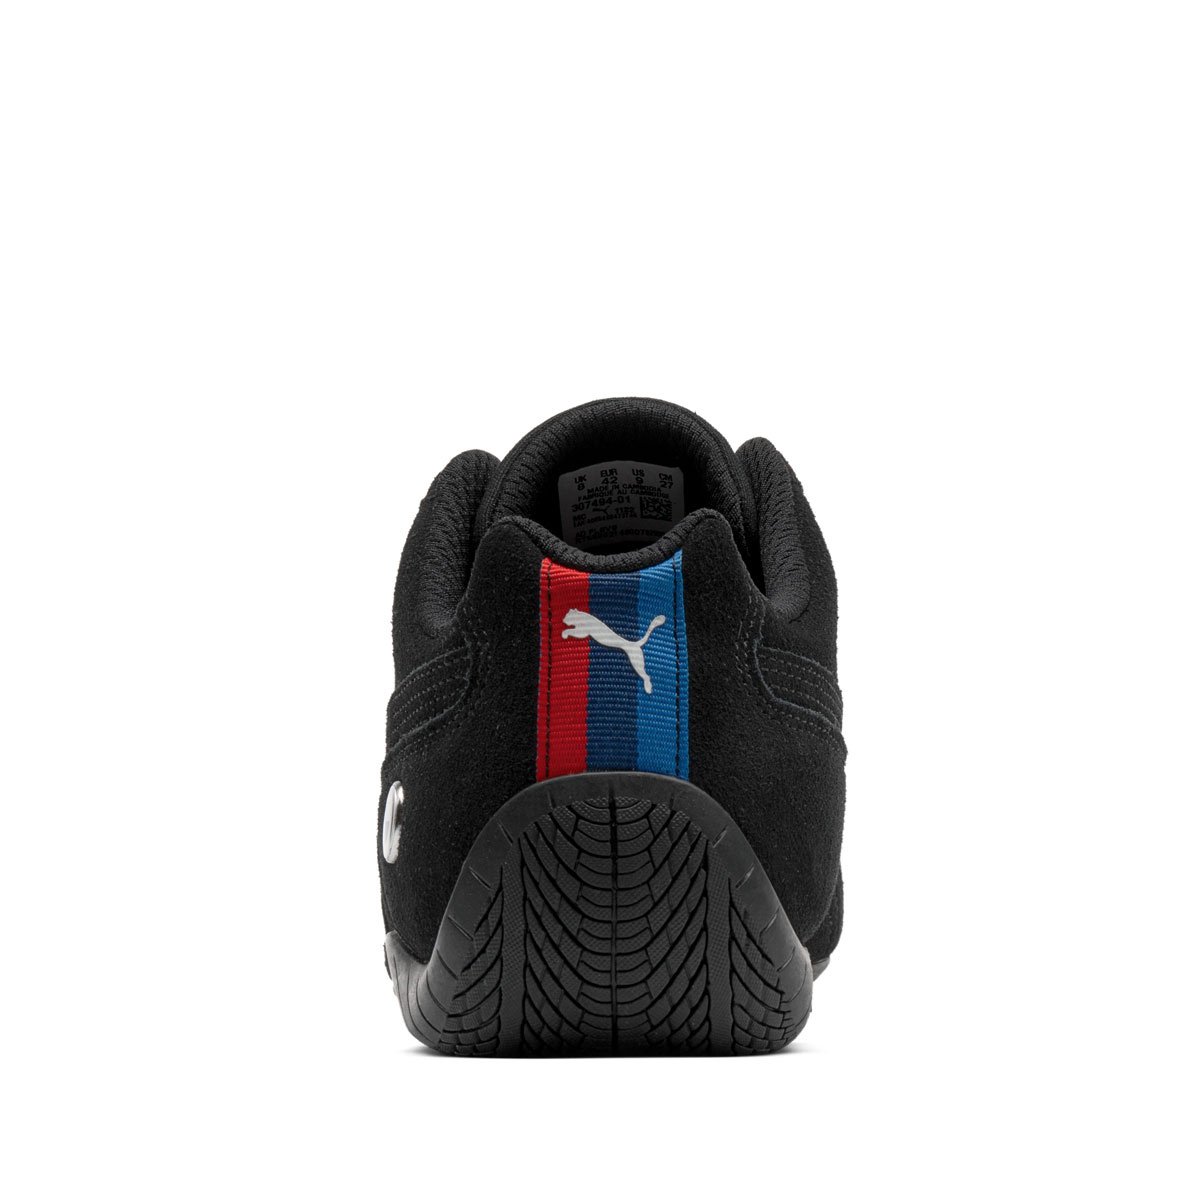 Pumа BMW MMS Speedcat Мъжки спортни обувки 307494-01